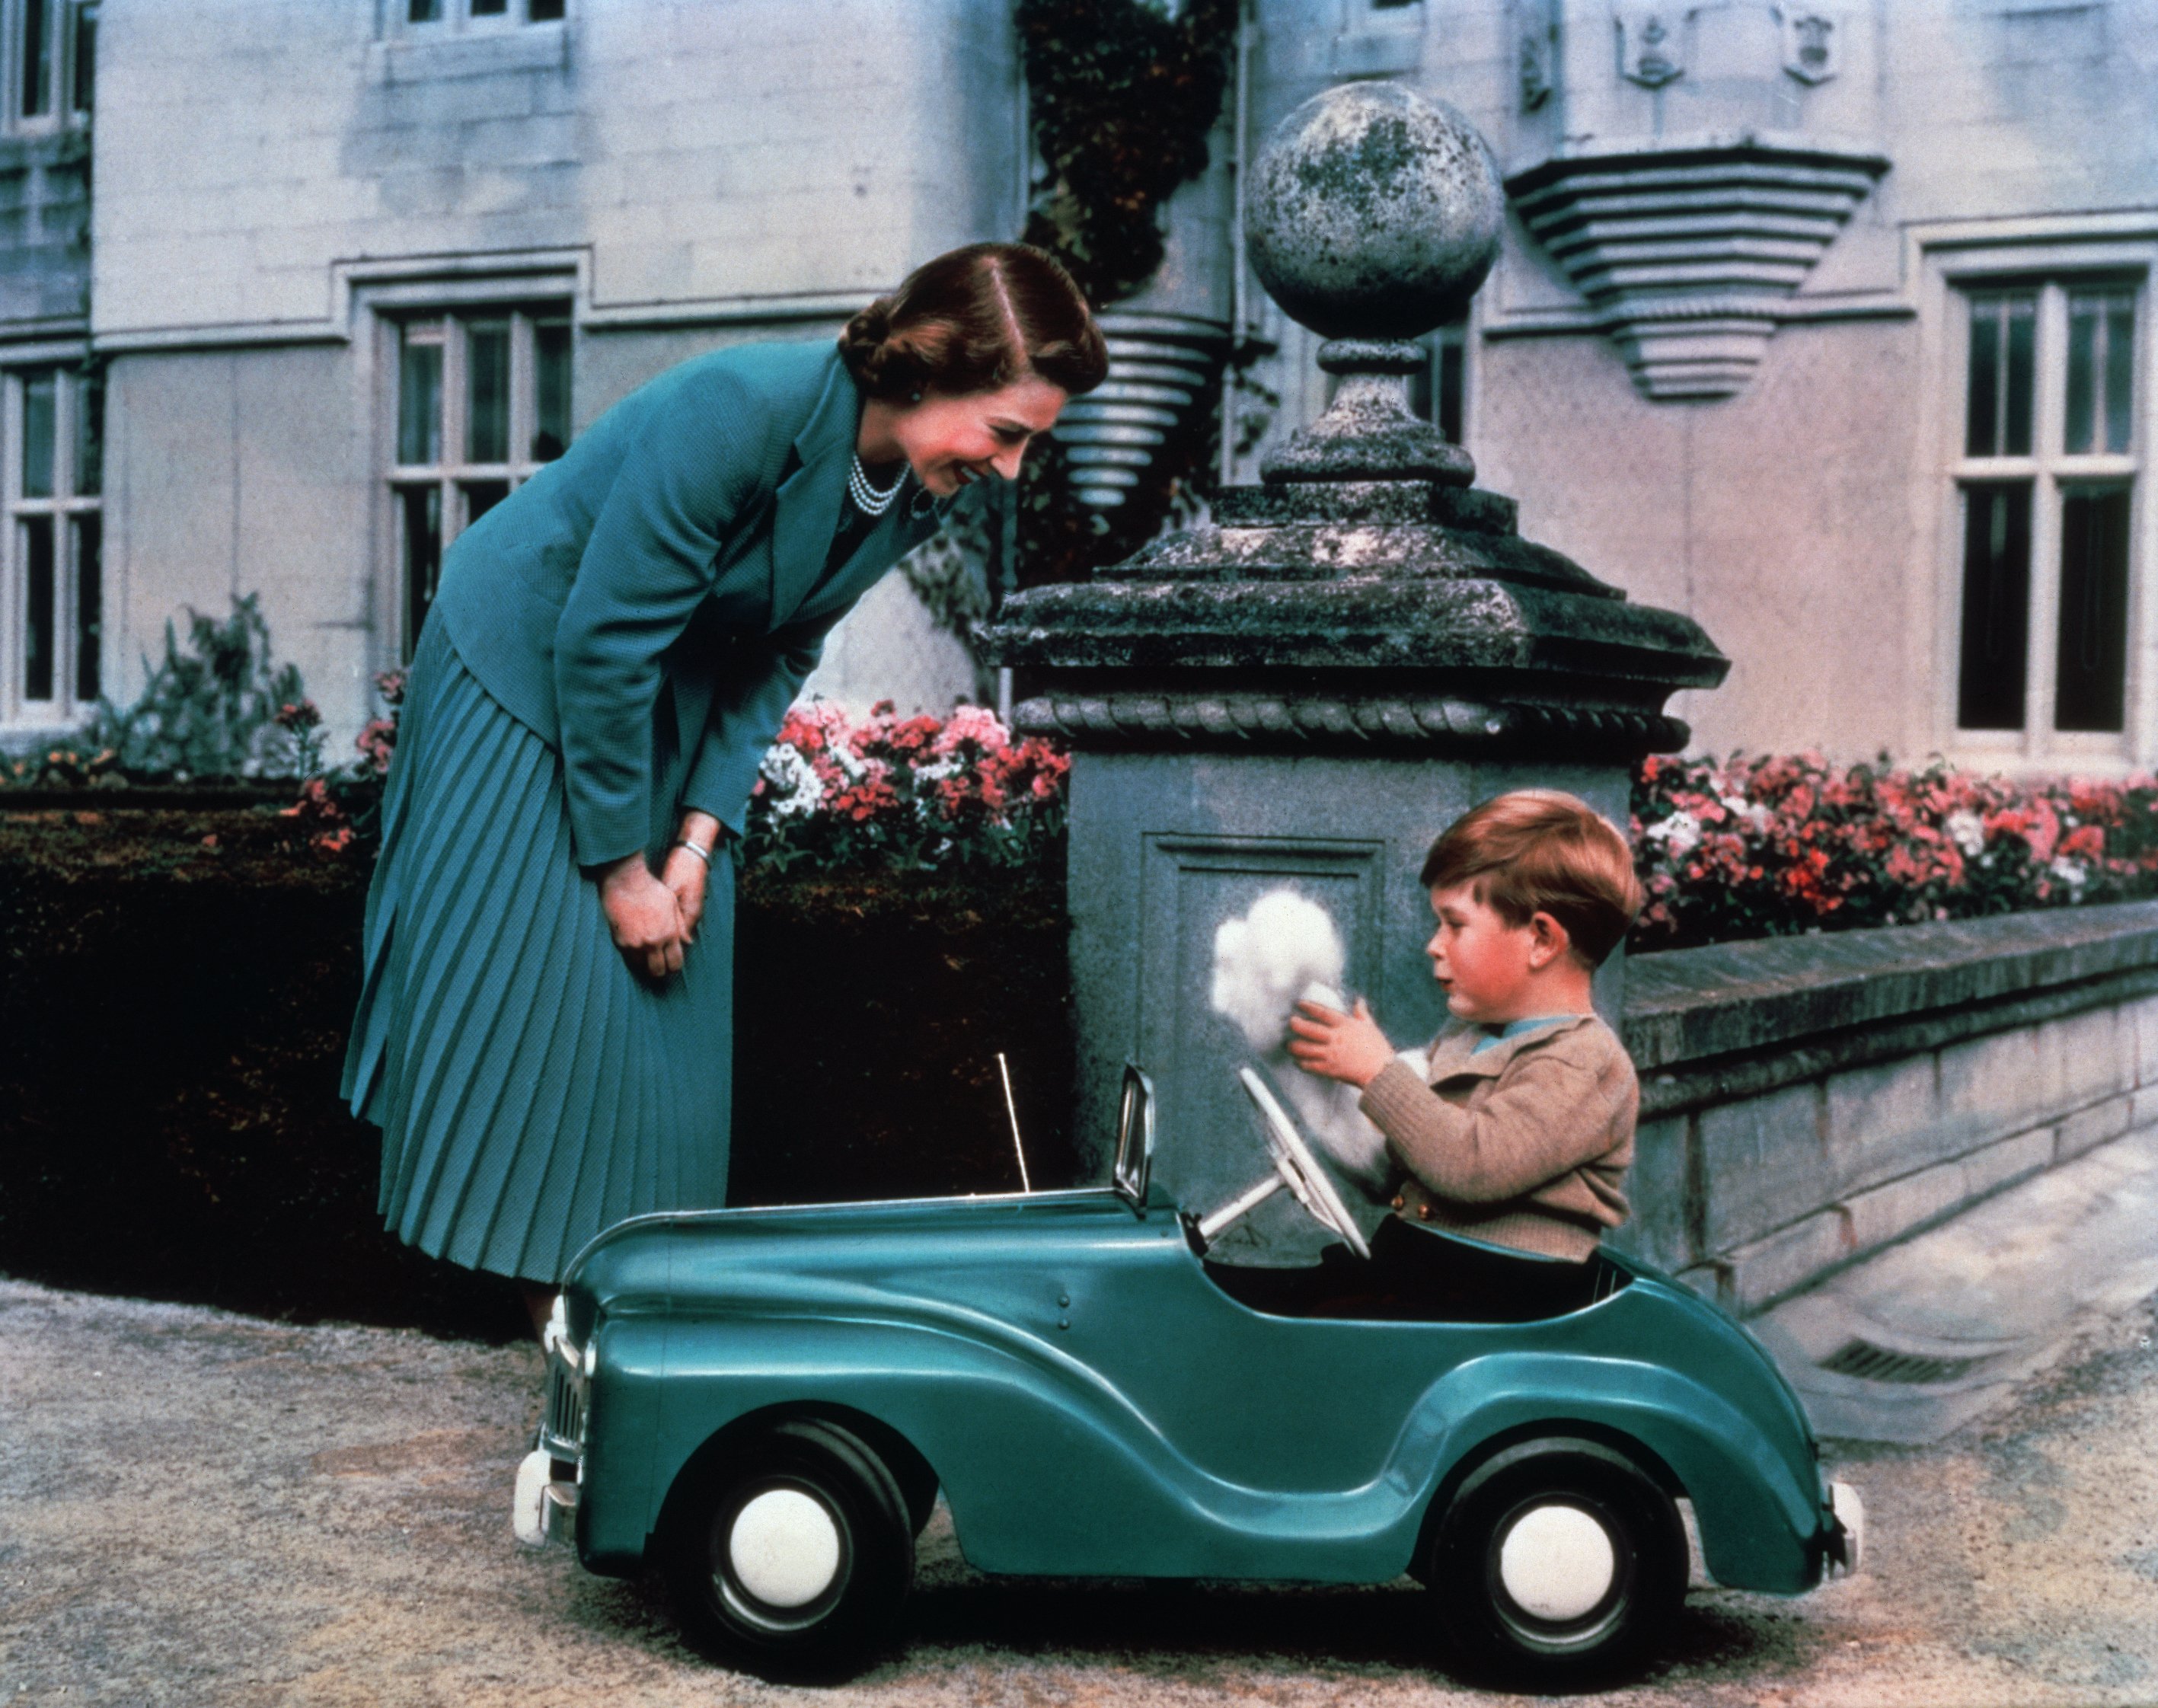 La reina Elizabeth II observa a su hijo, el príncipe Charles, conducir un coche de juguete por los terrenos del castillo de Balmoral, alrededor de 1952 | Foto: Getty Images